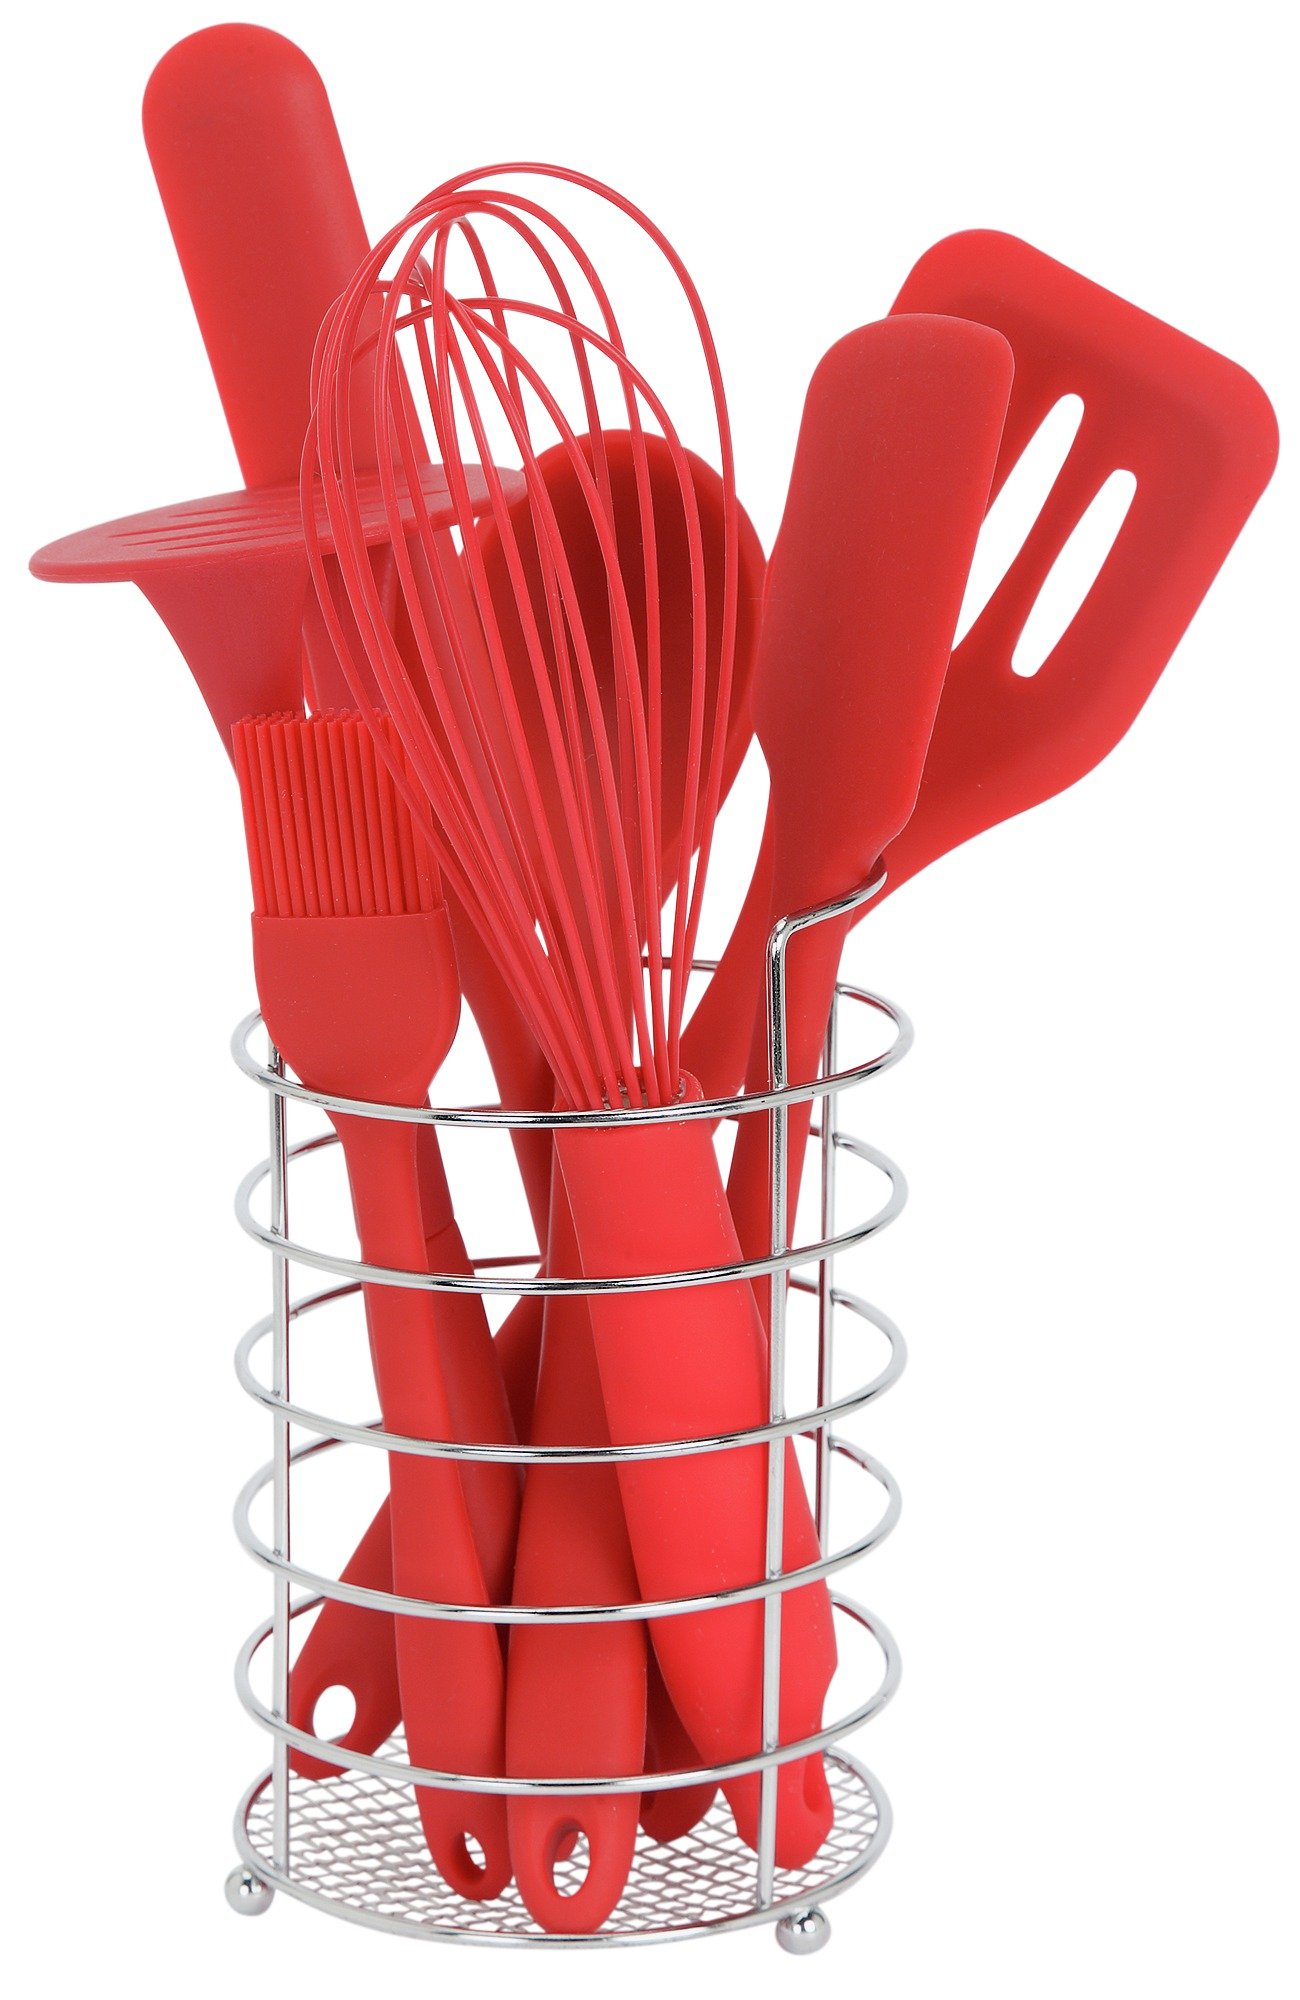 Argos kitchen utensils